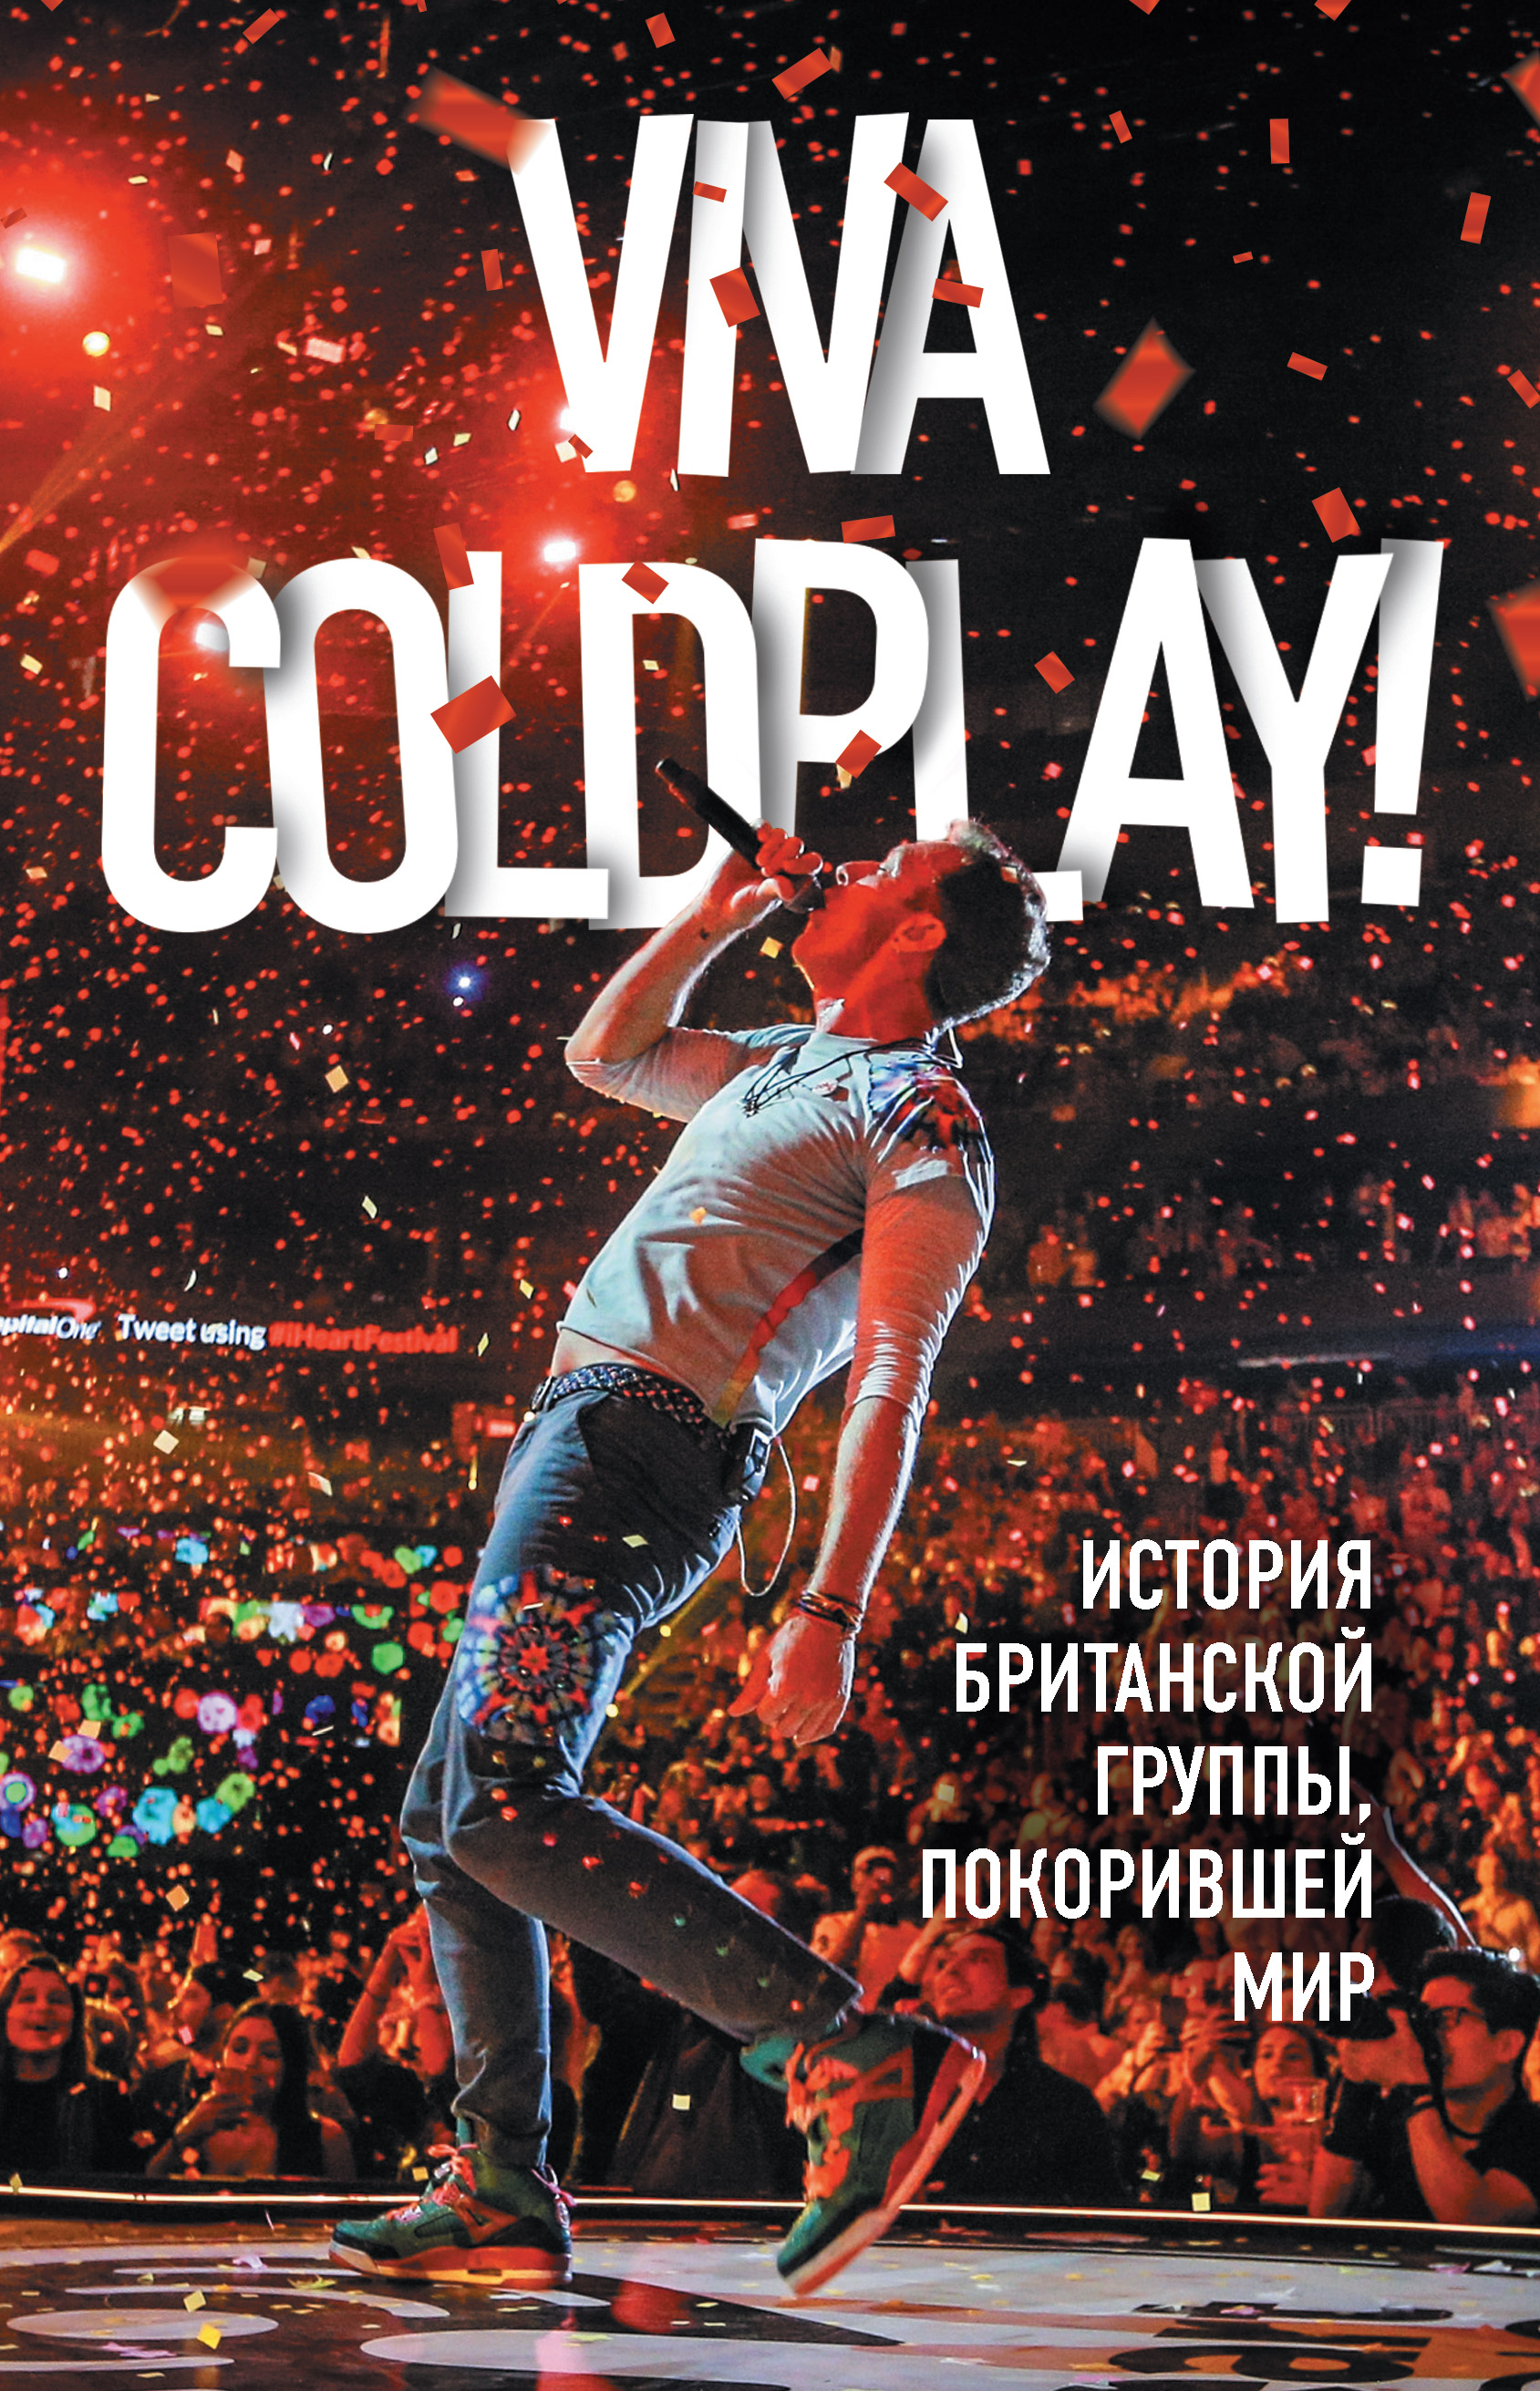 Viva Coldplay!История британской группы, покорившей мир